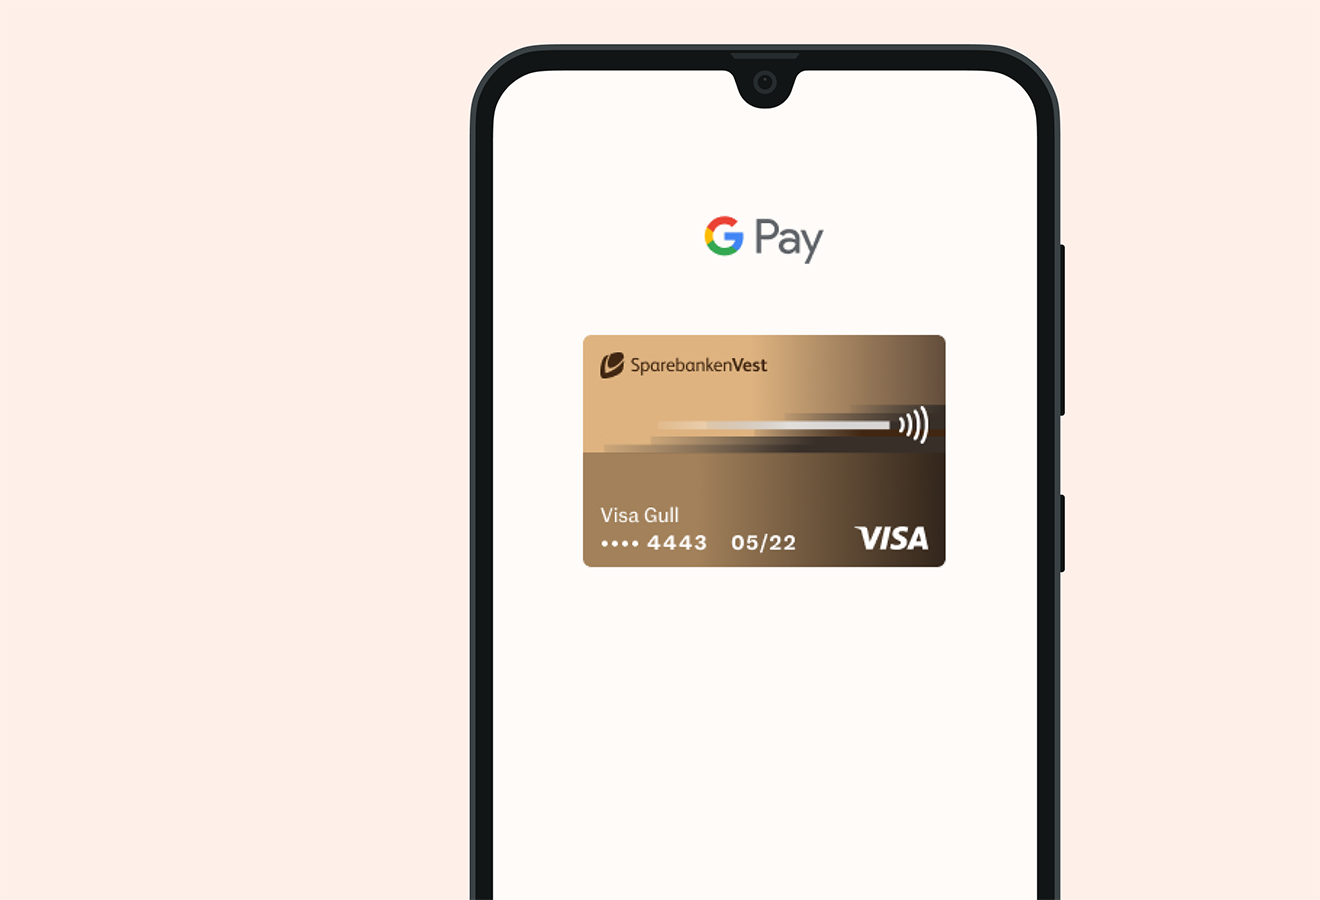 Androidtelefon med bilde av Visa Gull - Google Pay